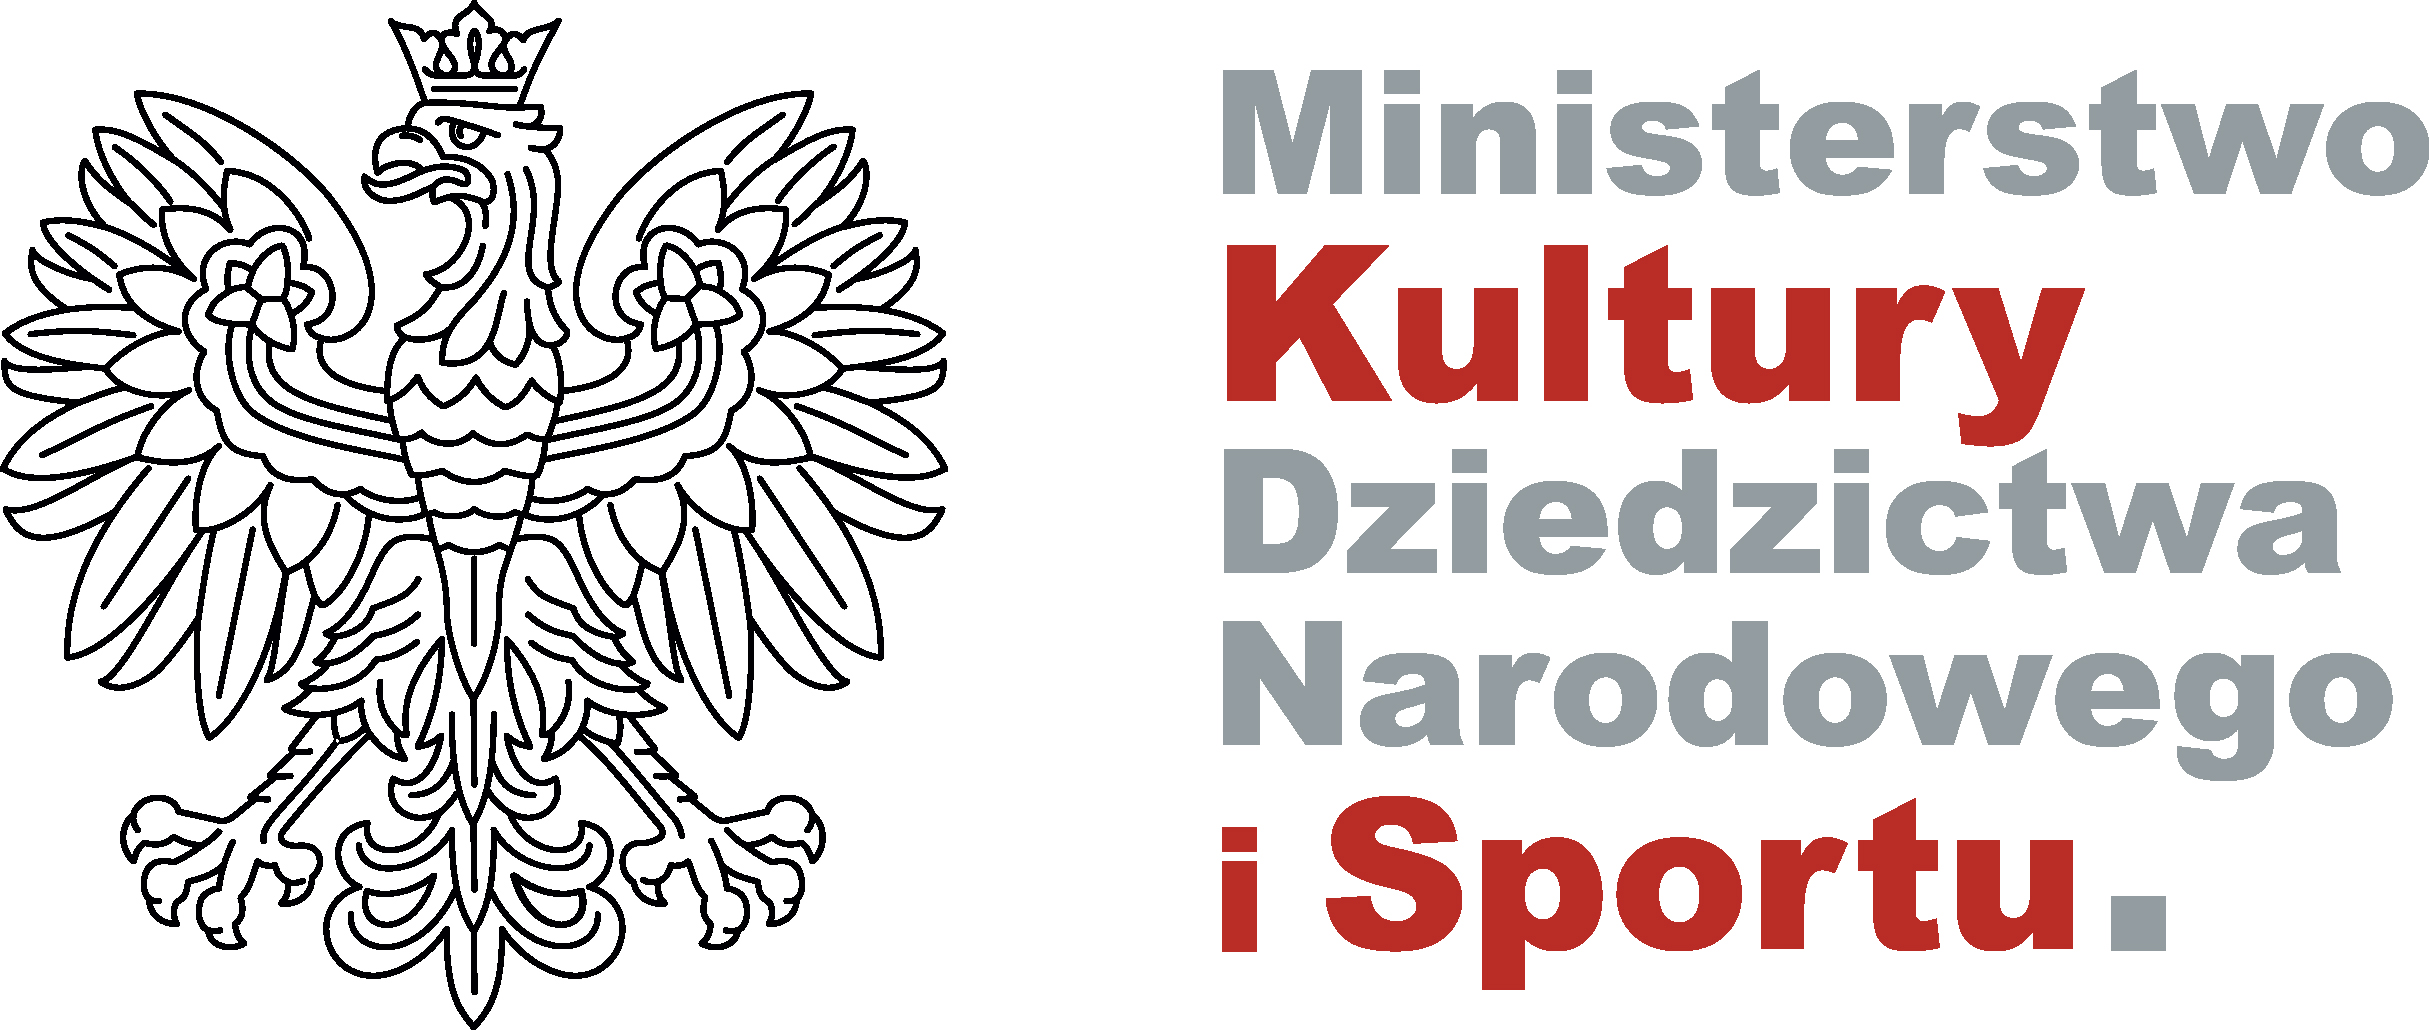 logo znak ministerstwa kultury, dzidzictwa narodowego i sportu